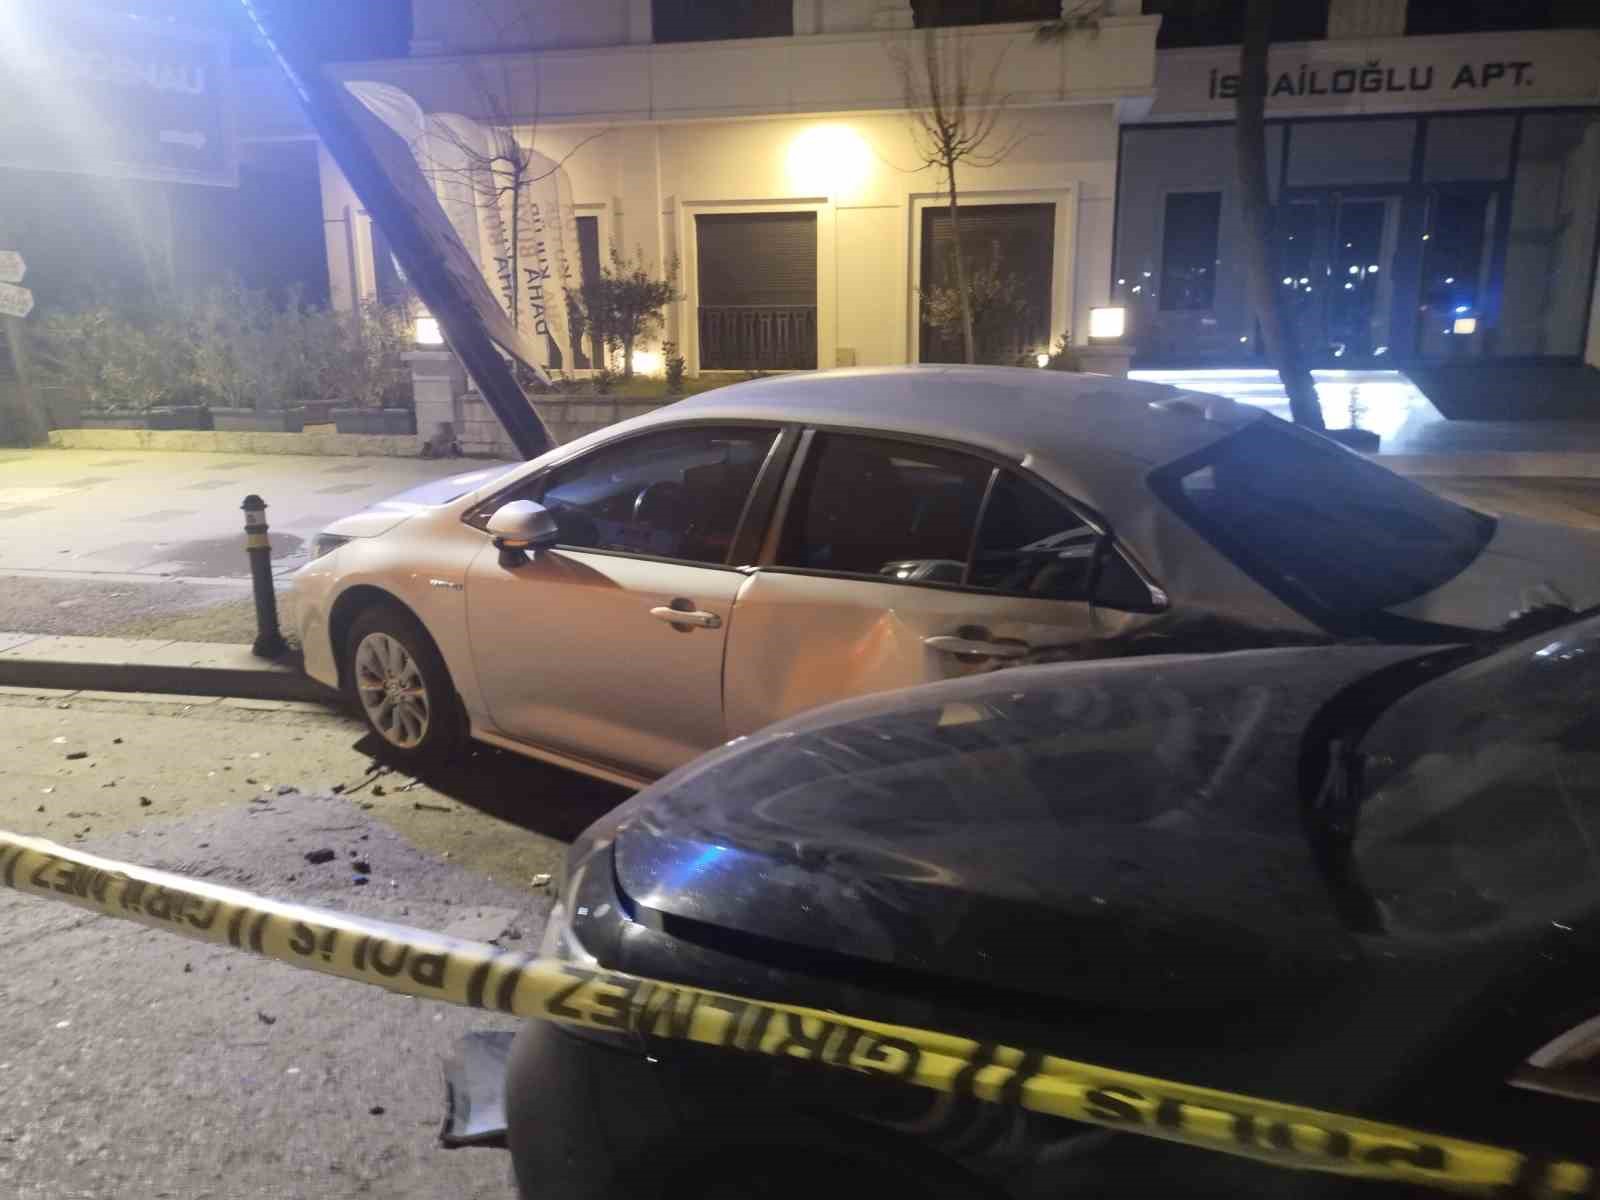 Kadıköy’de kontrolden çıkan araç park halindeki otomobile çarptı: 2 yaralı
